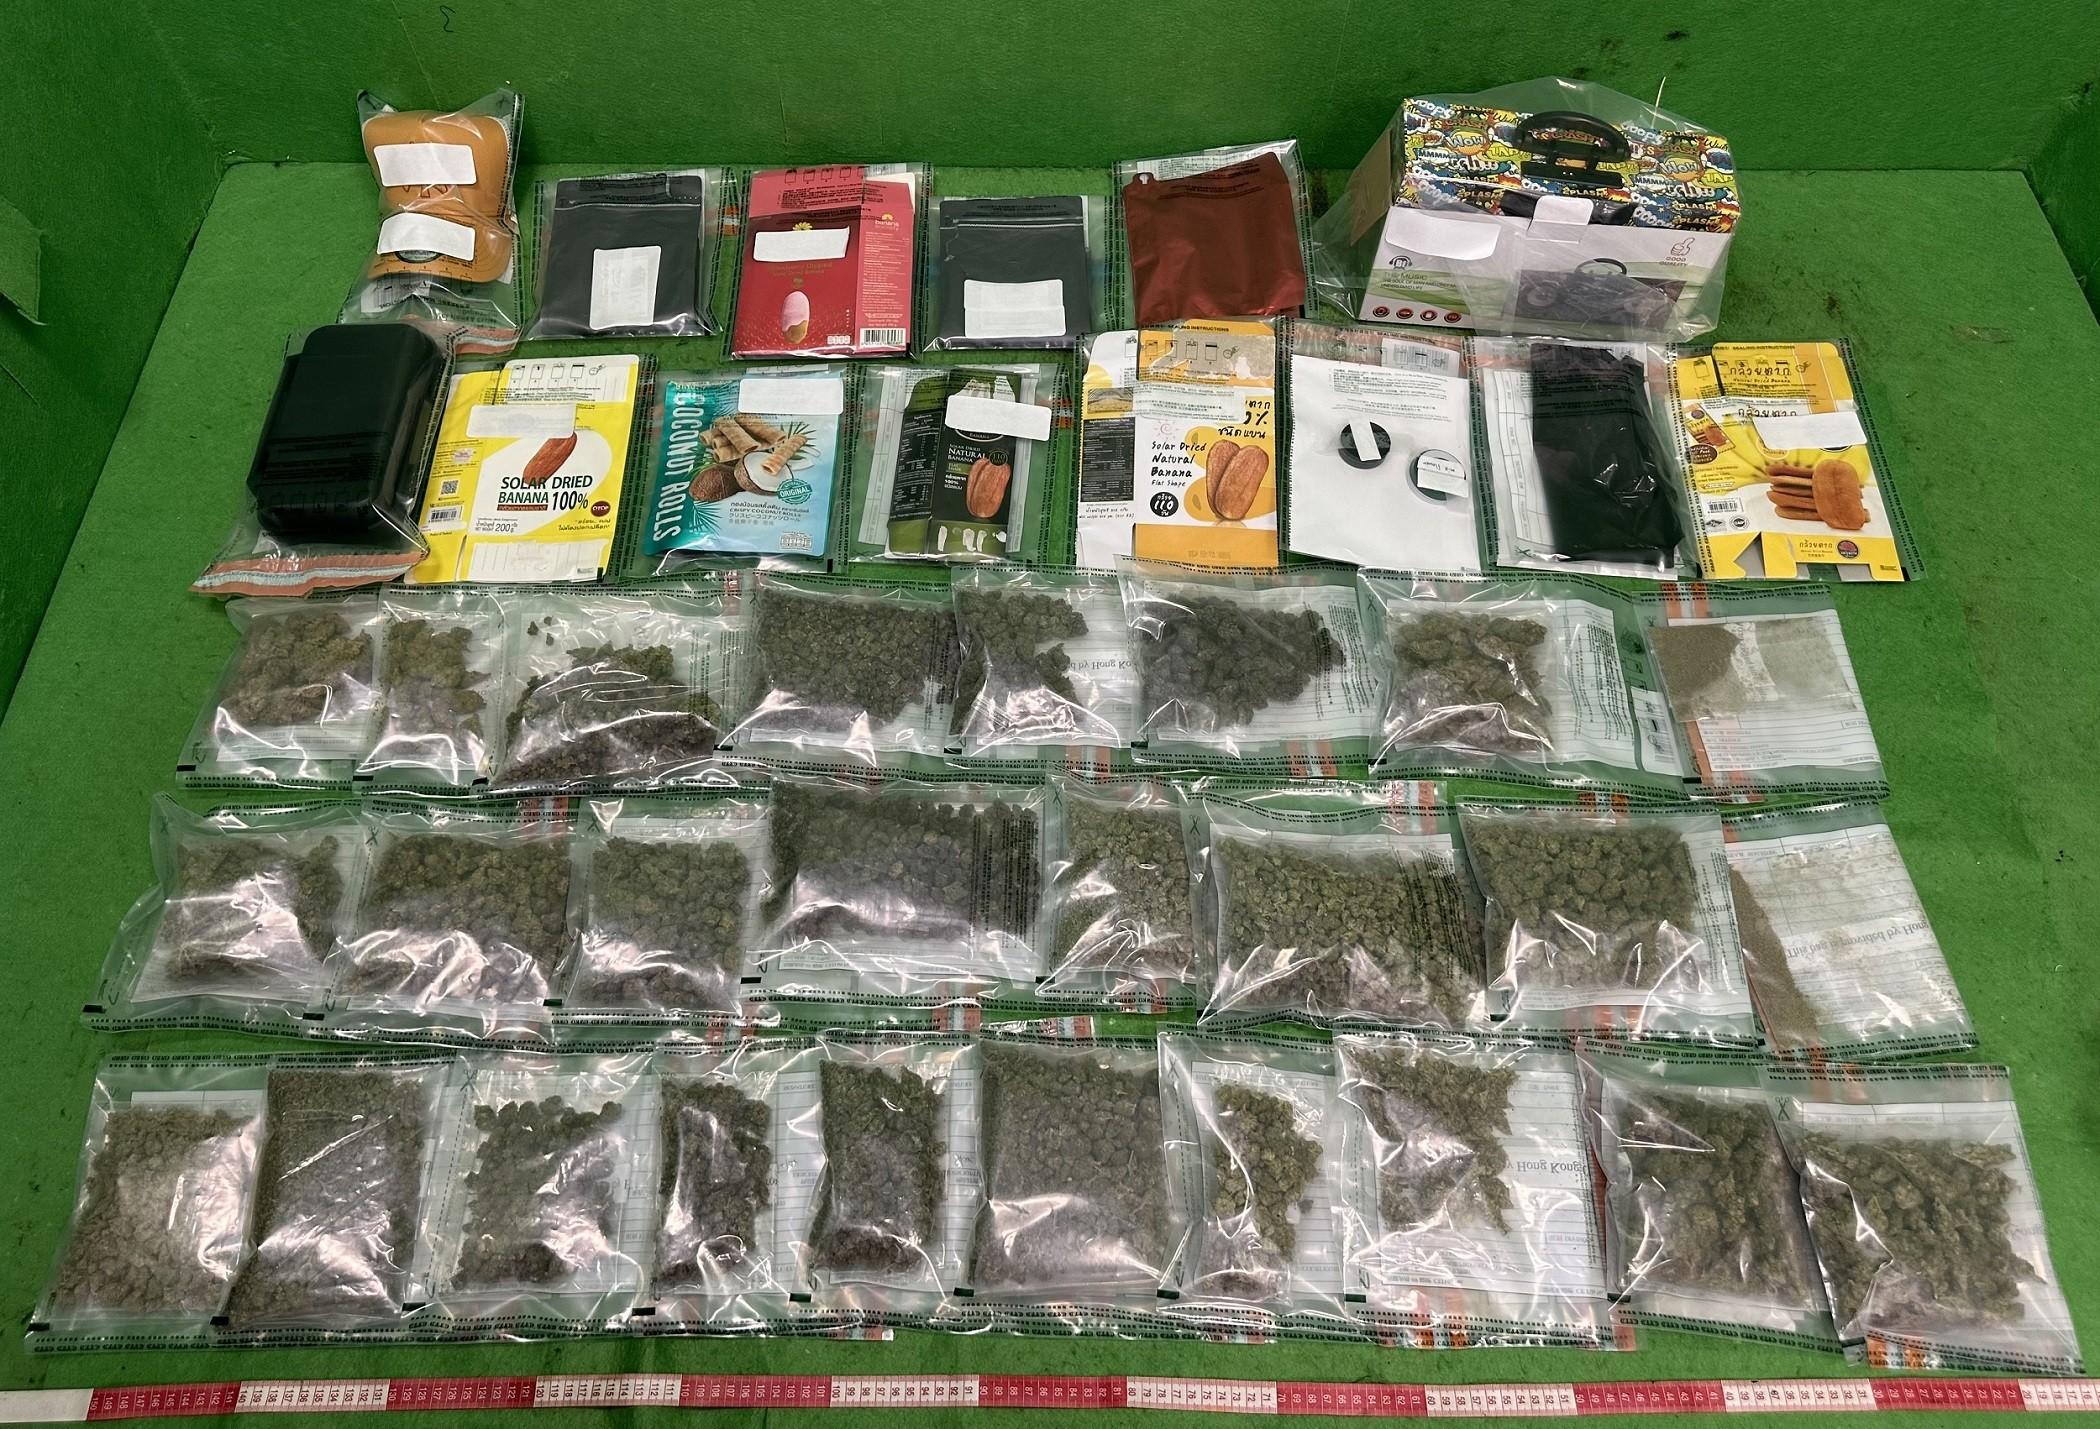 香港海關昨日（六月五日）在香港國際機場破獲一宗入境旅客販毒案件，檢獲約一點二公斤懷疑大麻花，估計市值約二十四萬元。圖示檢獲的懷疑大麻花，以及用作收藏毒品的零食包裝和其他物品。